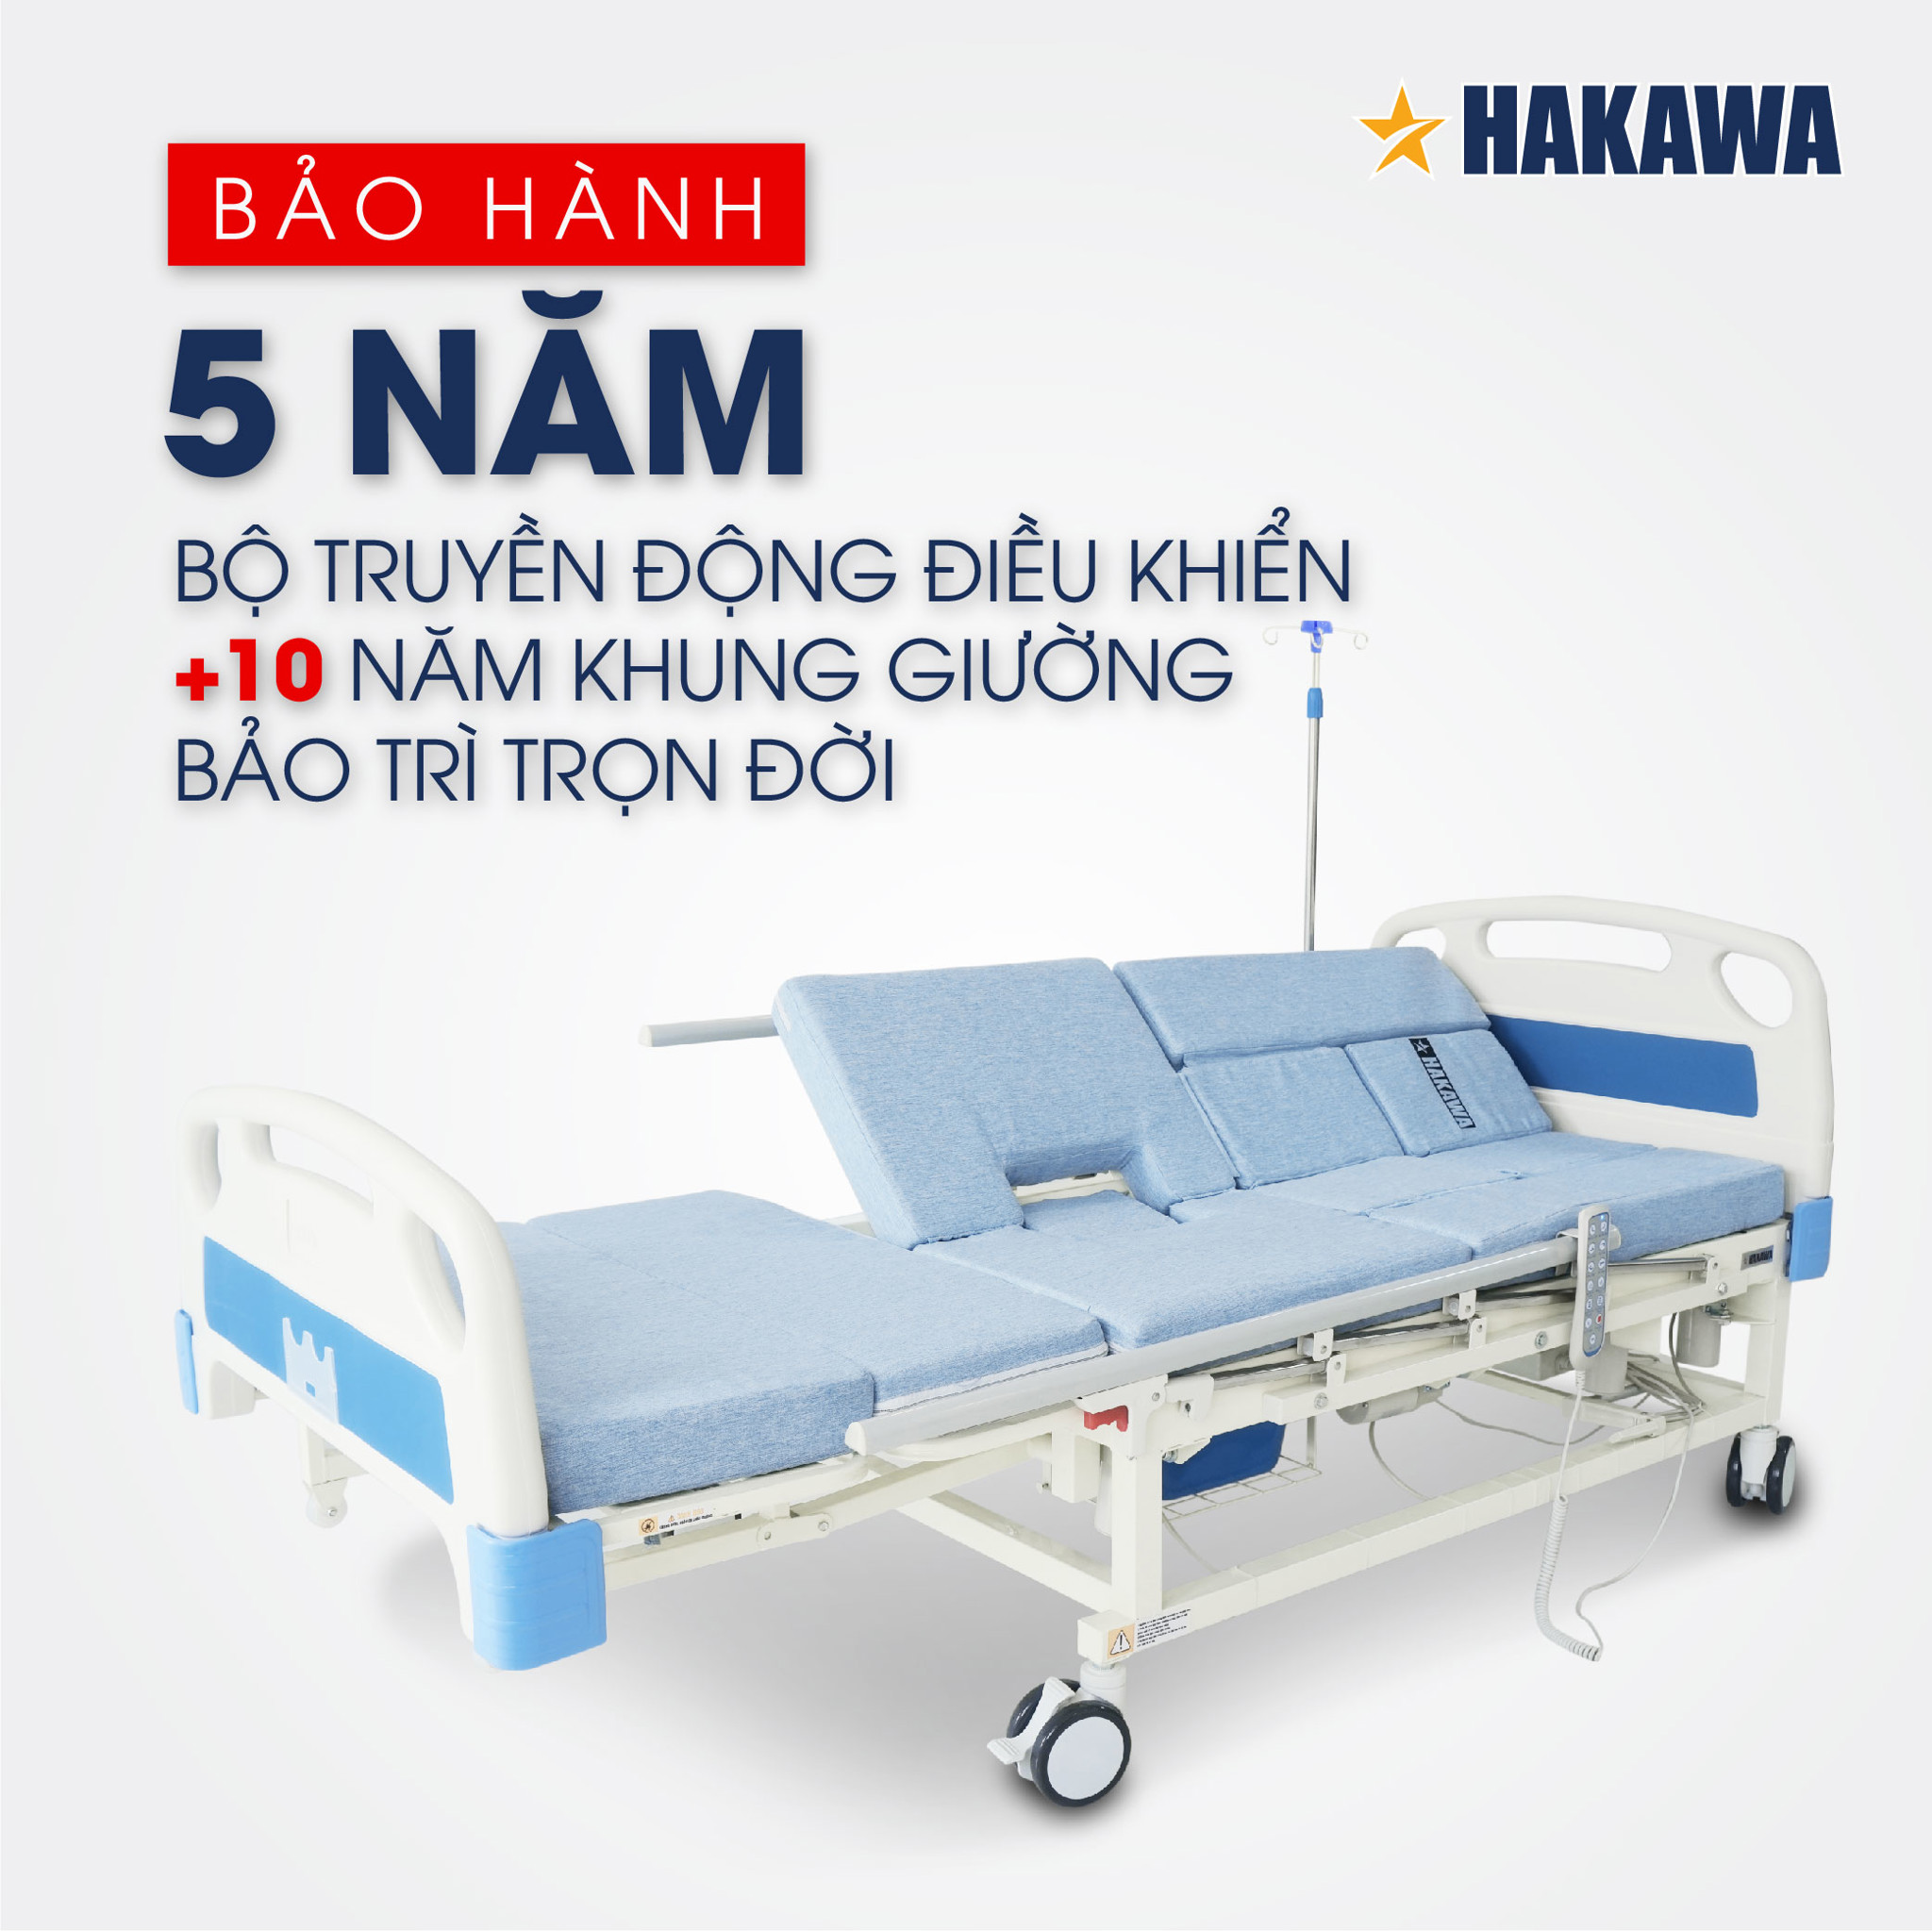 Giường y tế Hakawa bảo hành lên đến 5 năm bộ truyền động điều khiển, trên 10 năm khung giường